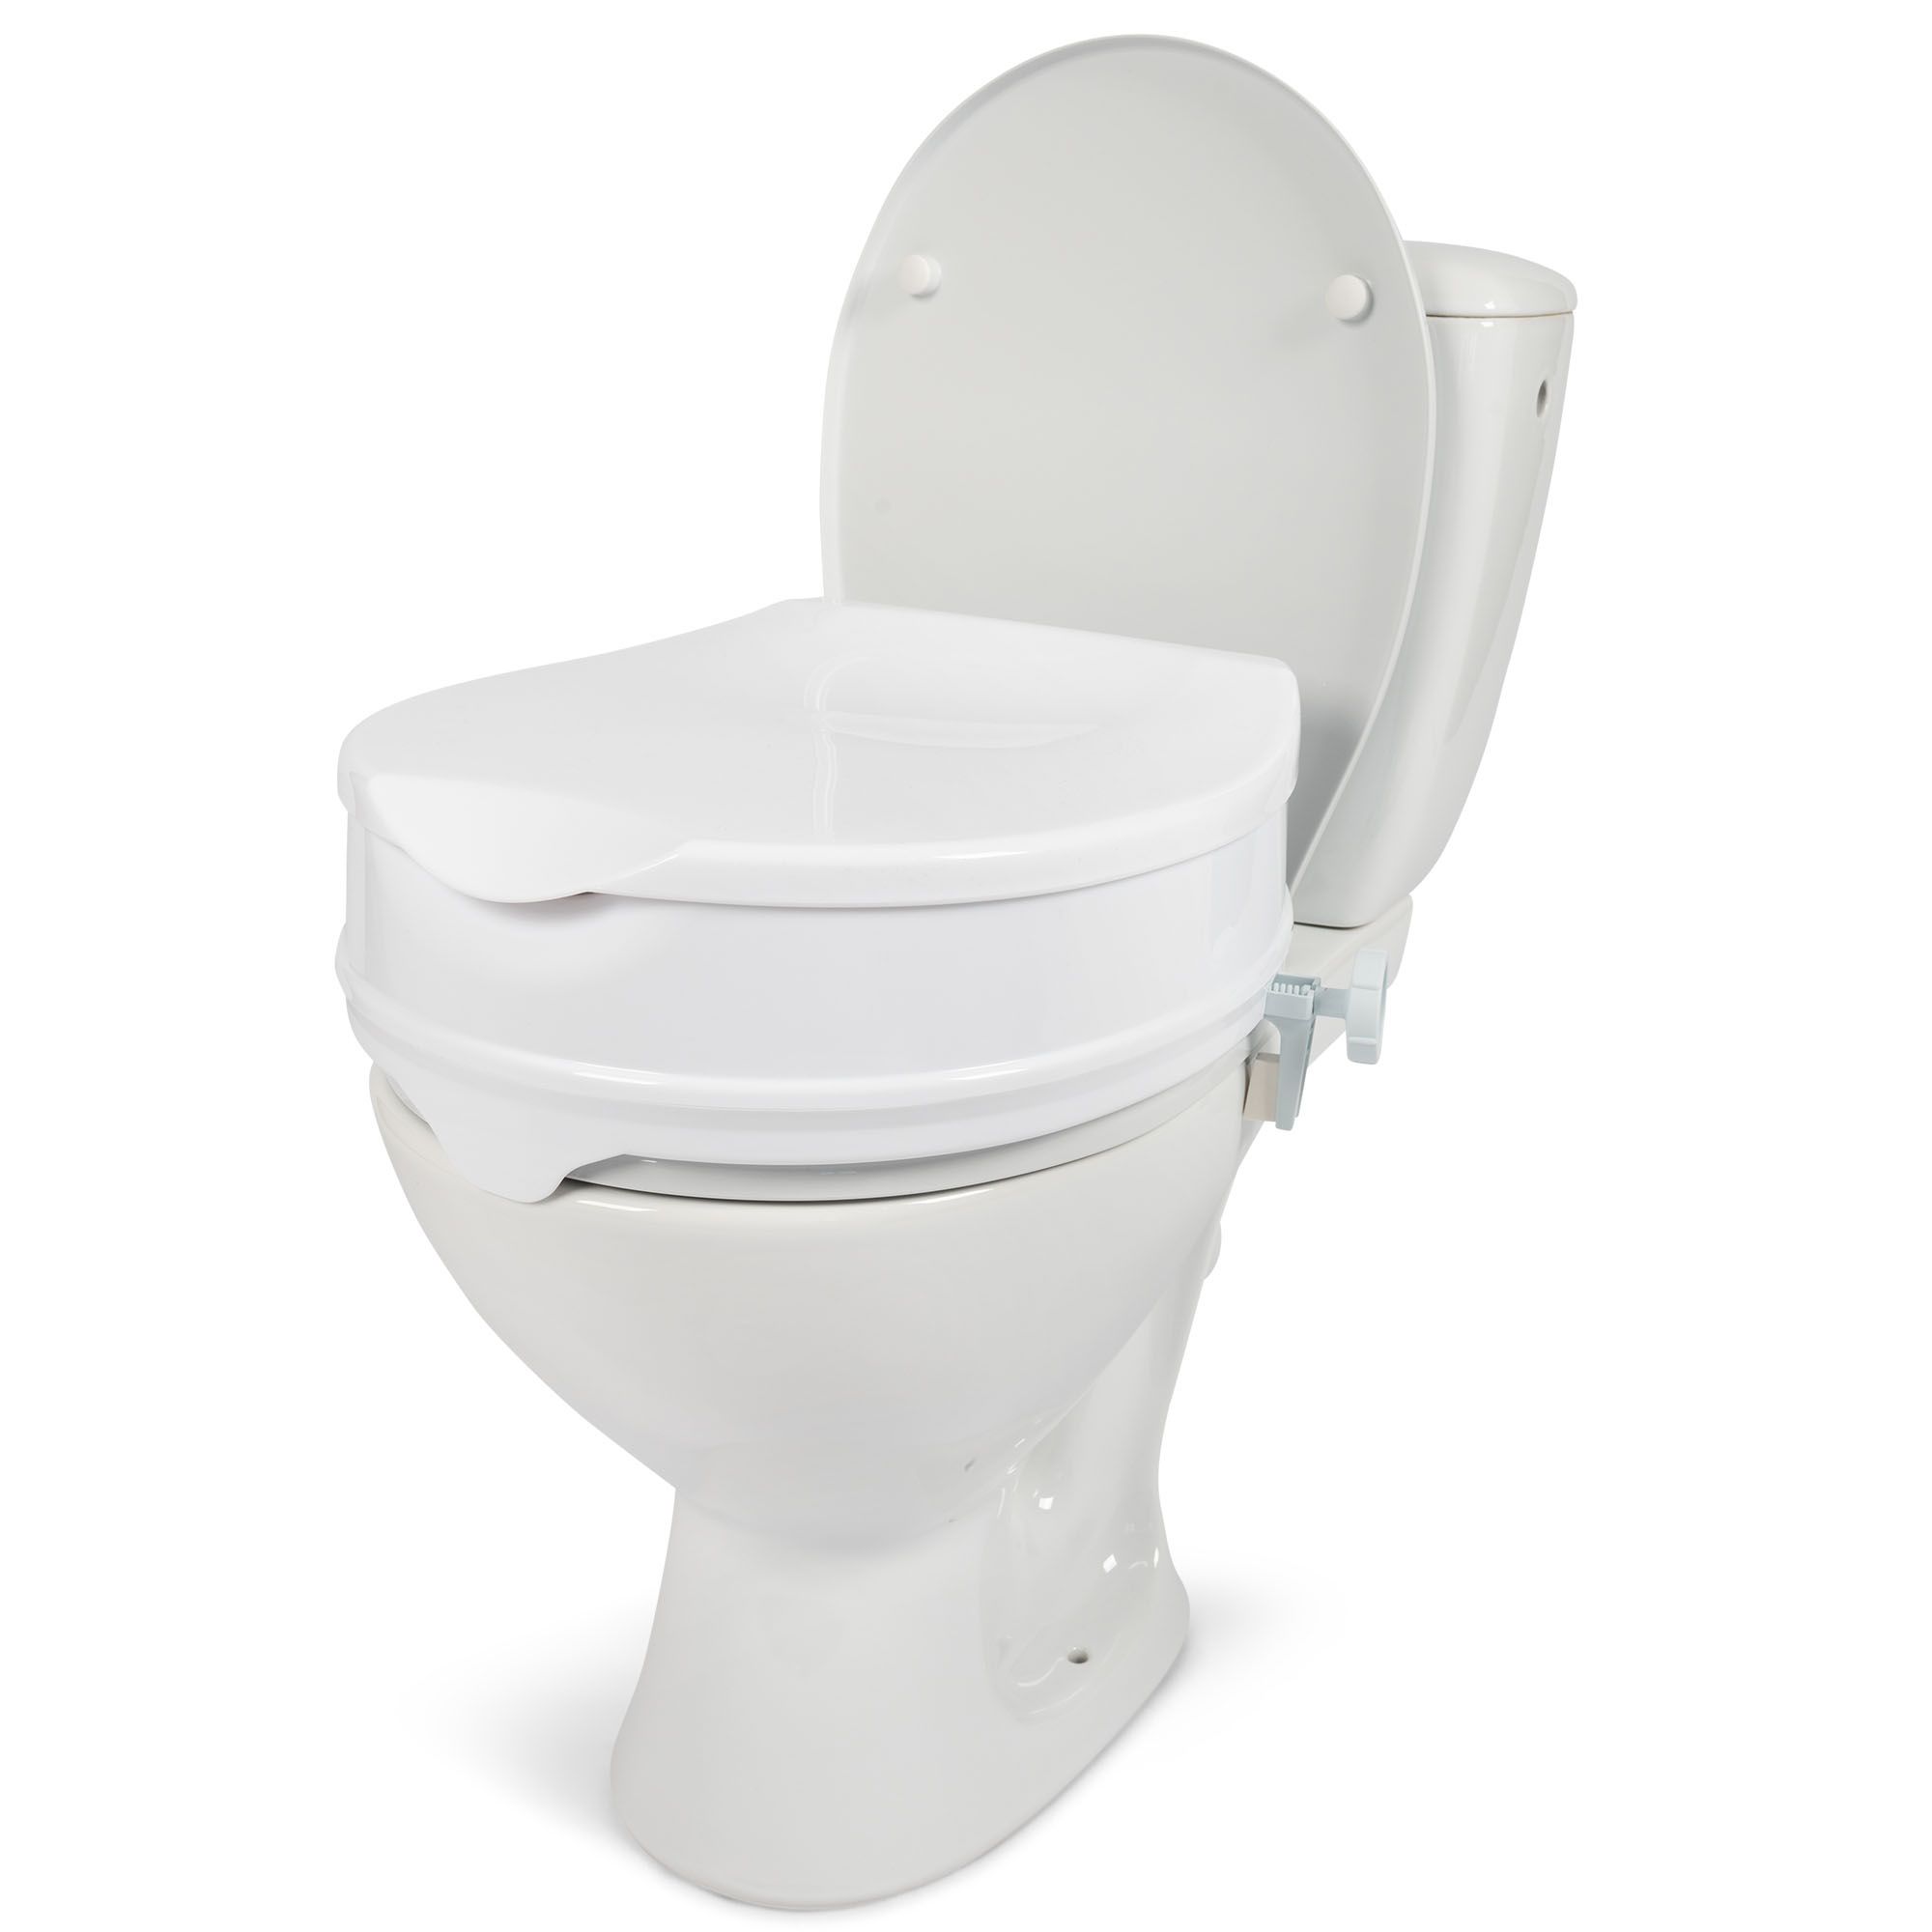 dunimed raised toilet seat lid closed